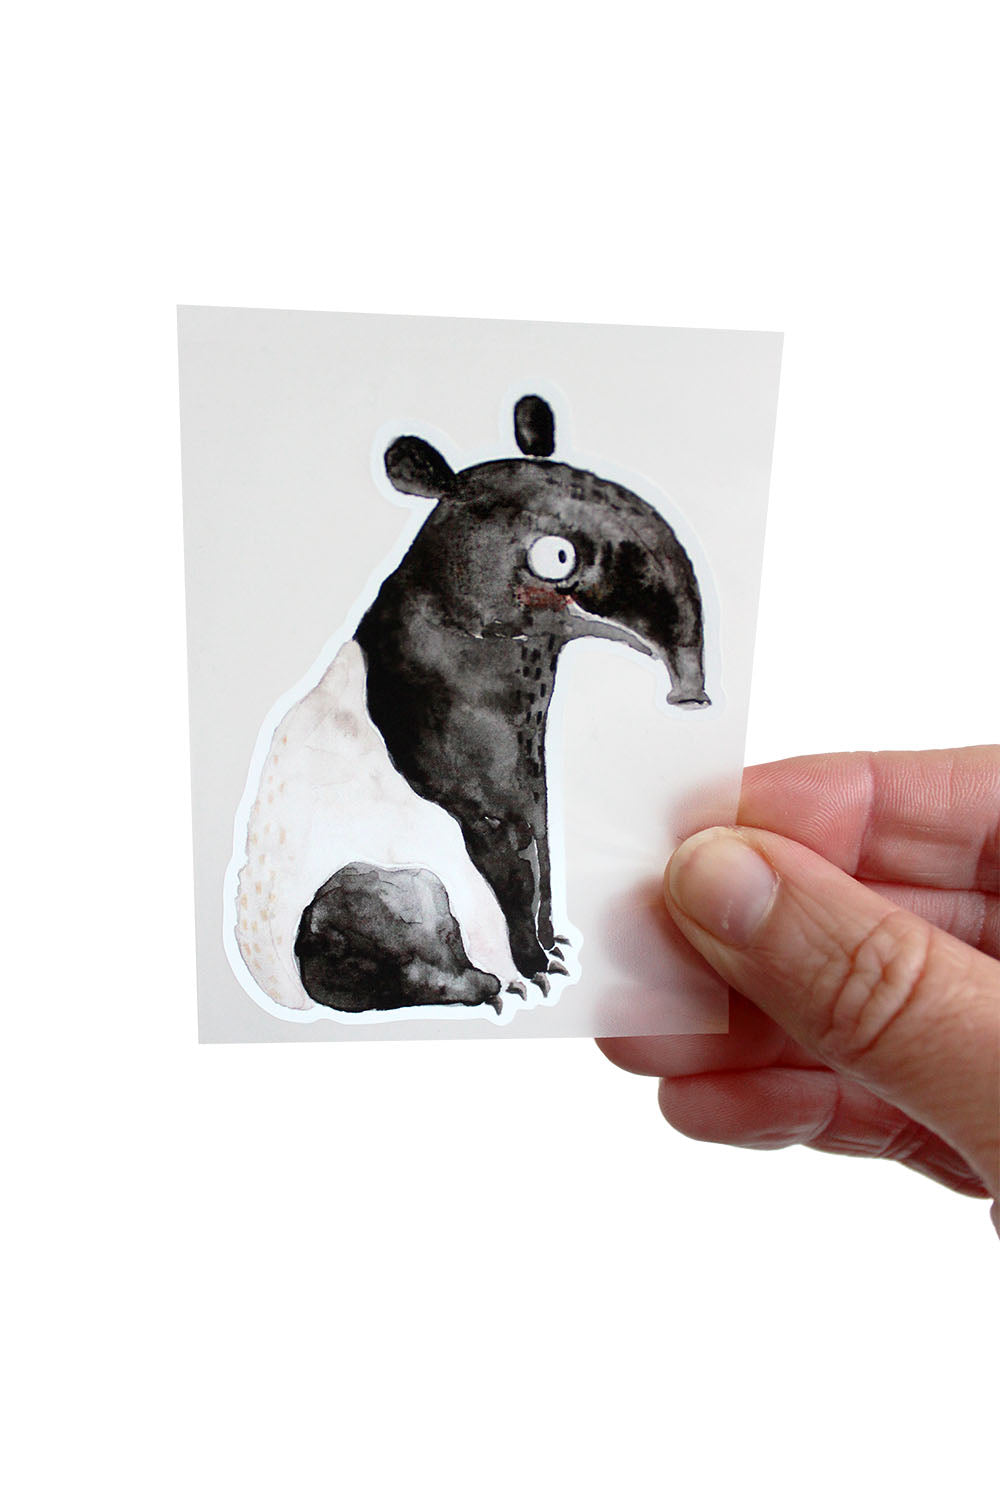 bügelbild tapir in der hand gehalten